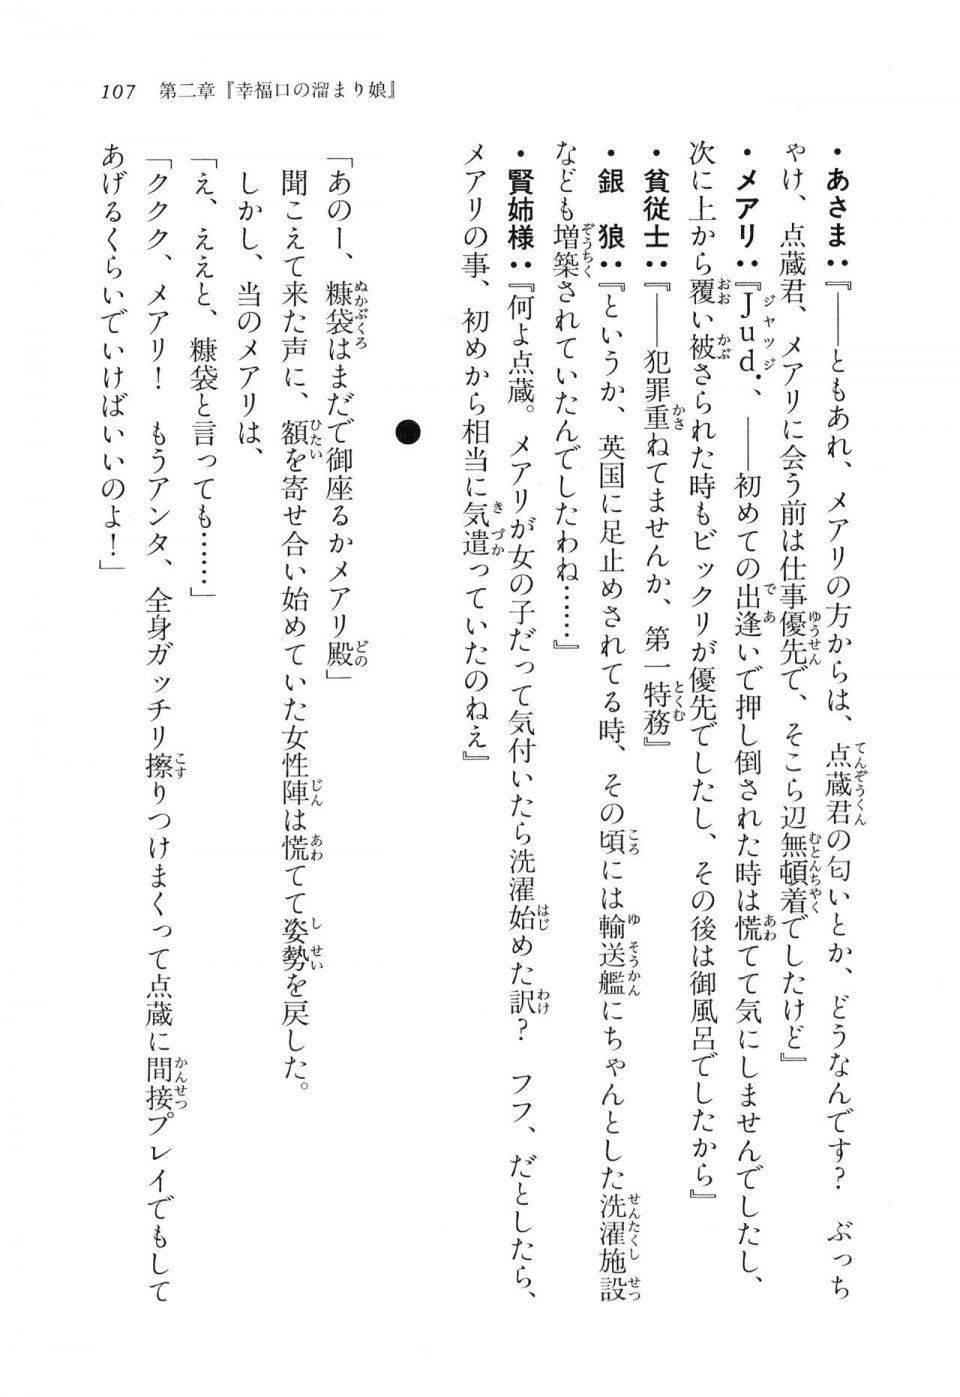 Kyoukai Senjou no Horizon LN Vol 16(7A) - Photo #107